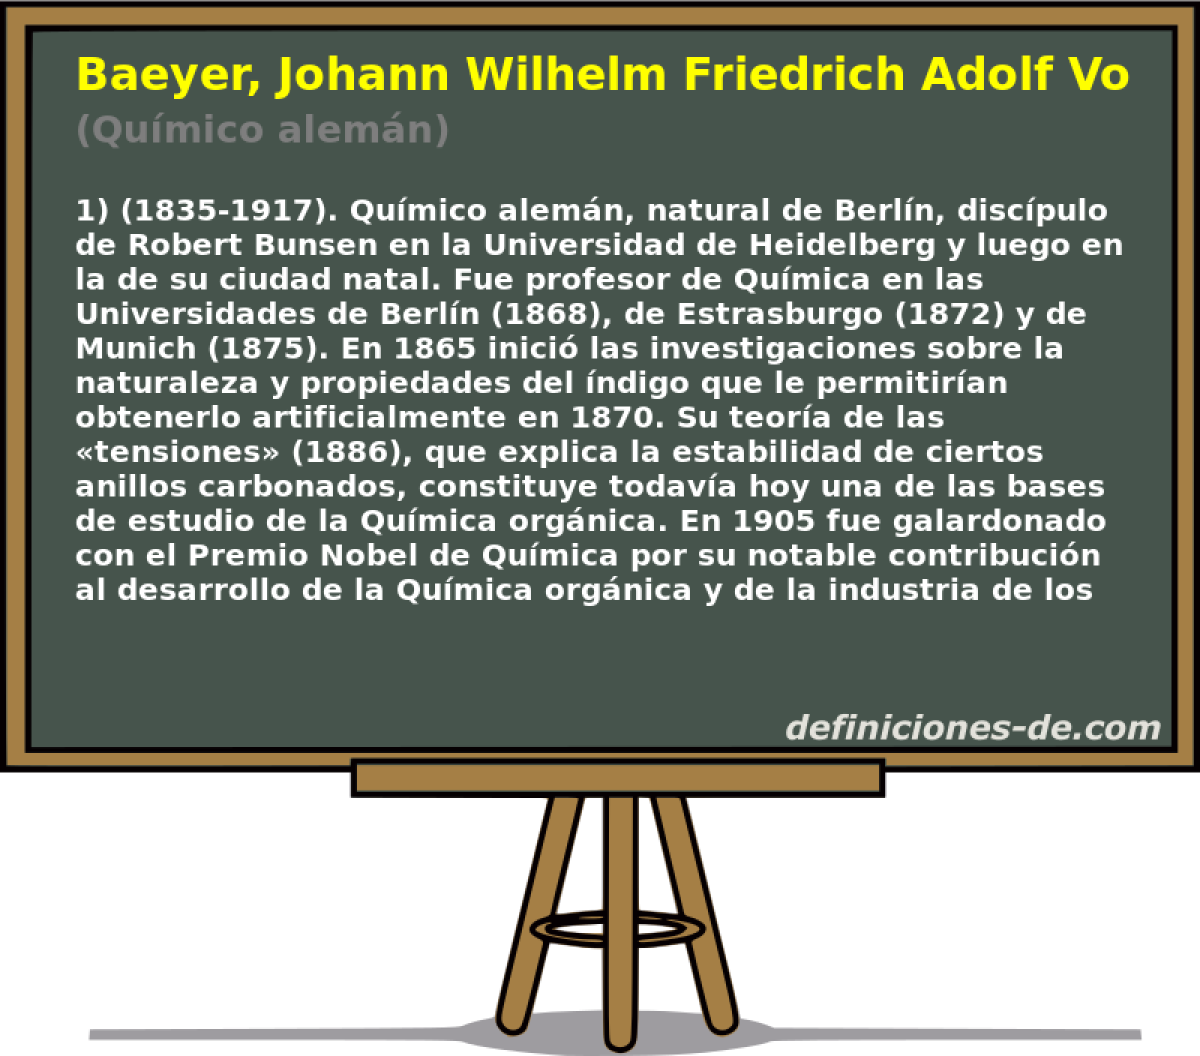 Baeyer, Johann Wilhelm Friedrich Adolf Von (Qumico alemn)